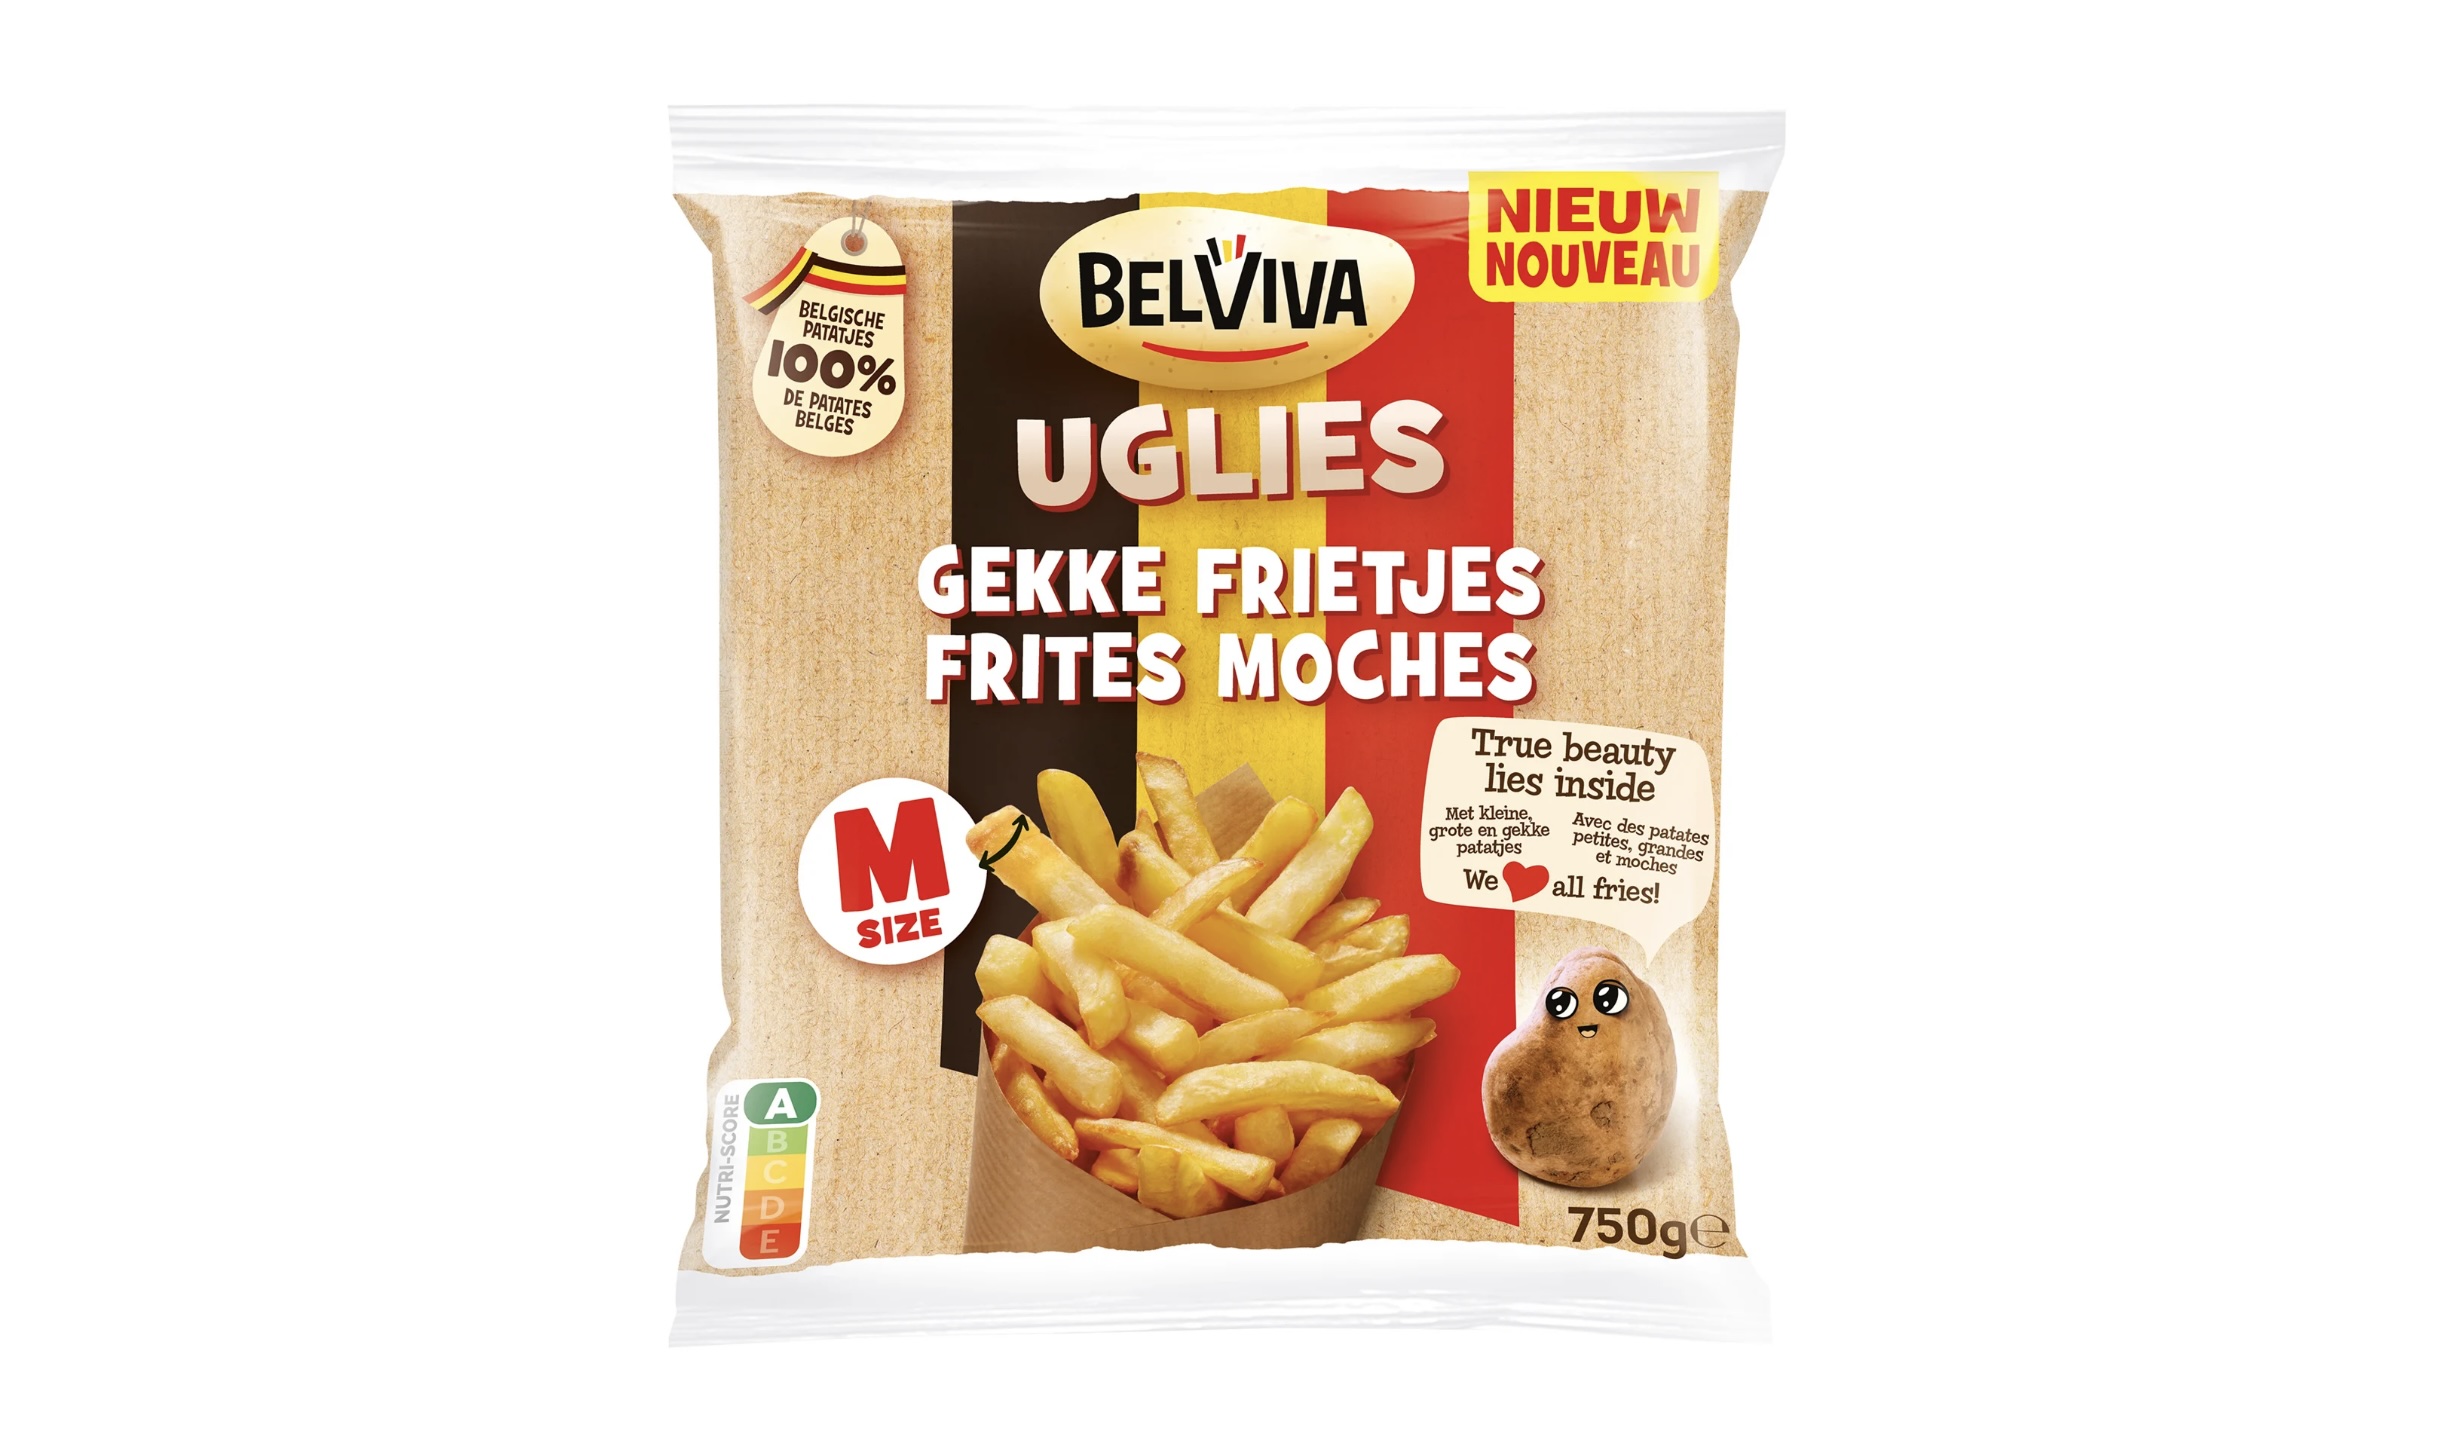 Belviva strijdt tegen voedselverspilling met lelijke frietjes